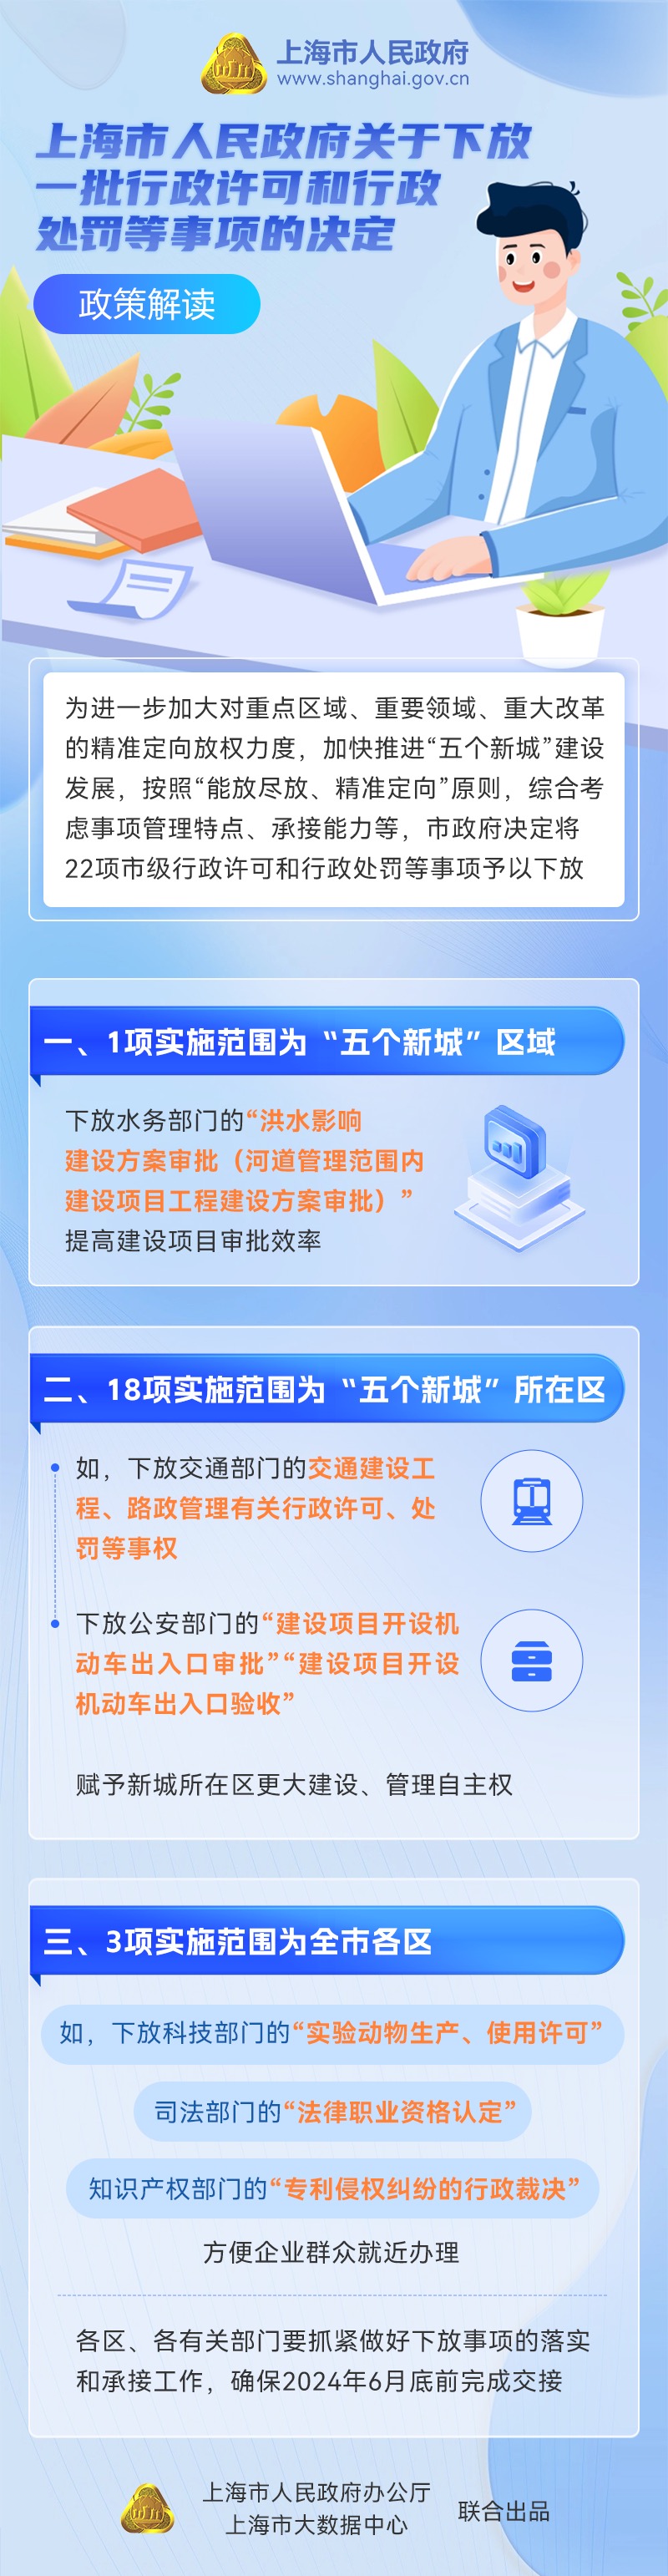 《上海市人民政府关于下放一批行政许可和行政处罚等事项的决定》政策图解.jpg